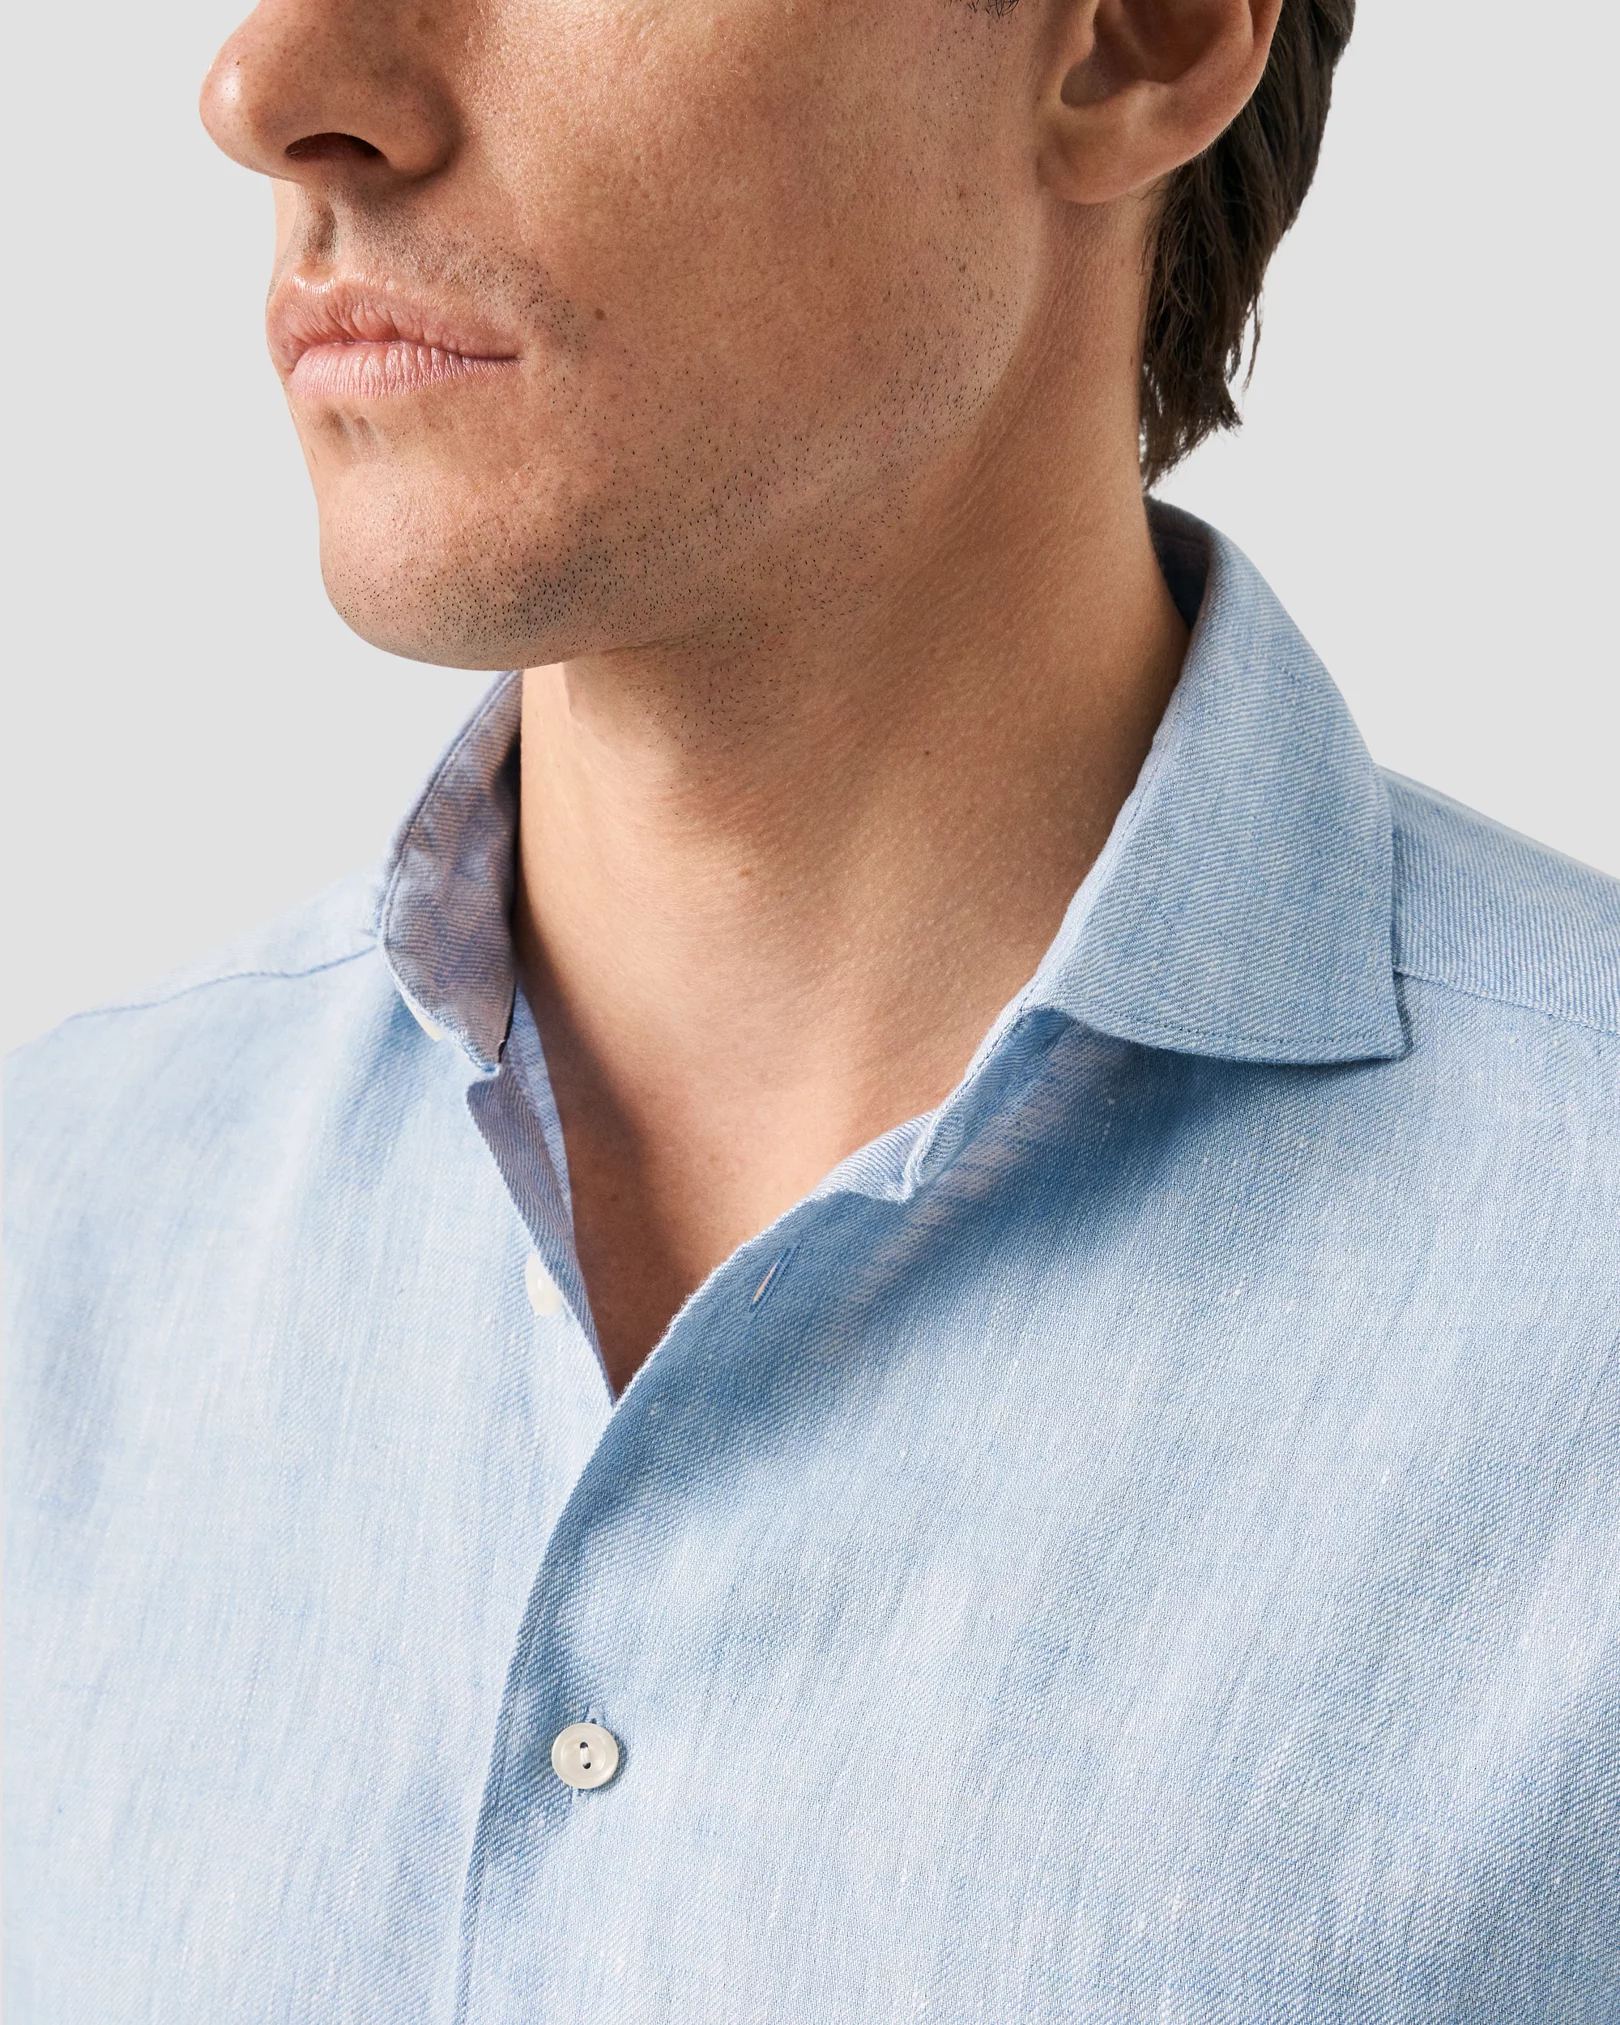 Eton - dark blue linen wide spread shirt